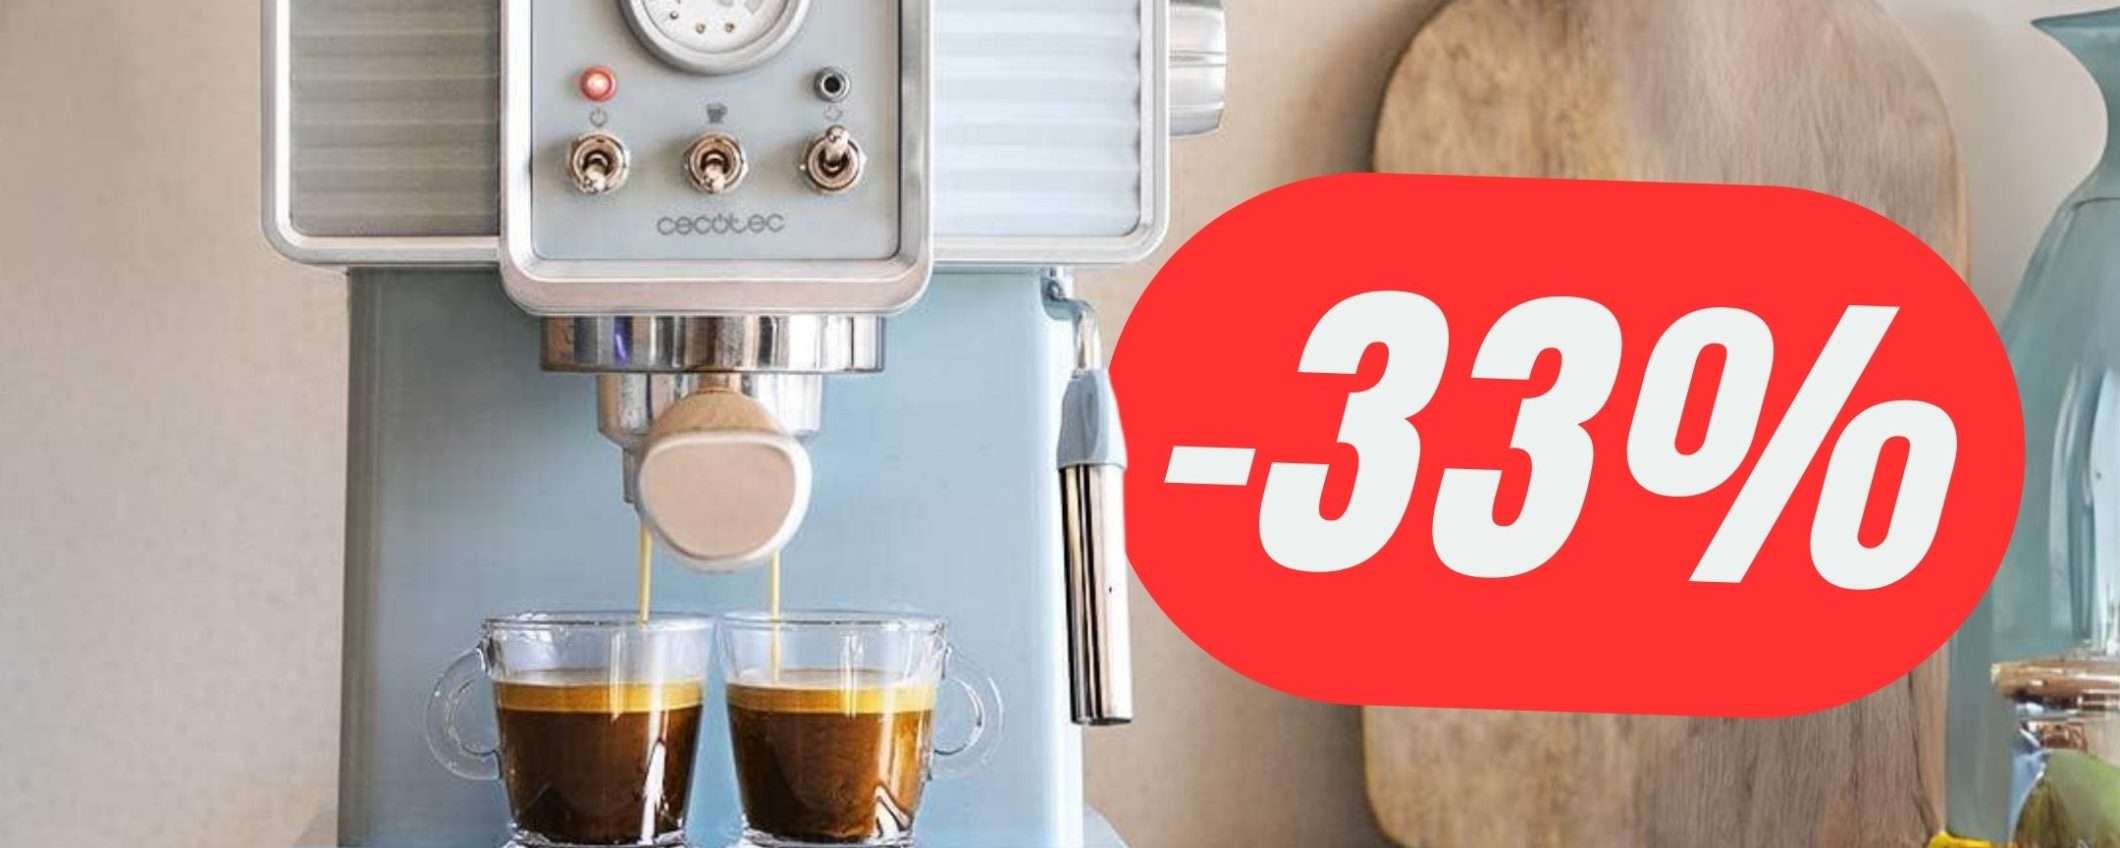 La MACCHINA per il CAFFÈ vintage che prepara anche il cappuccino è in sconto al -33%!